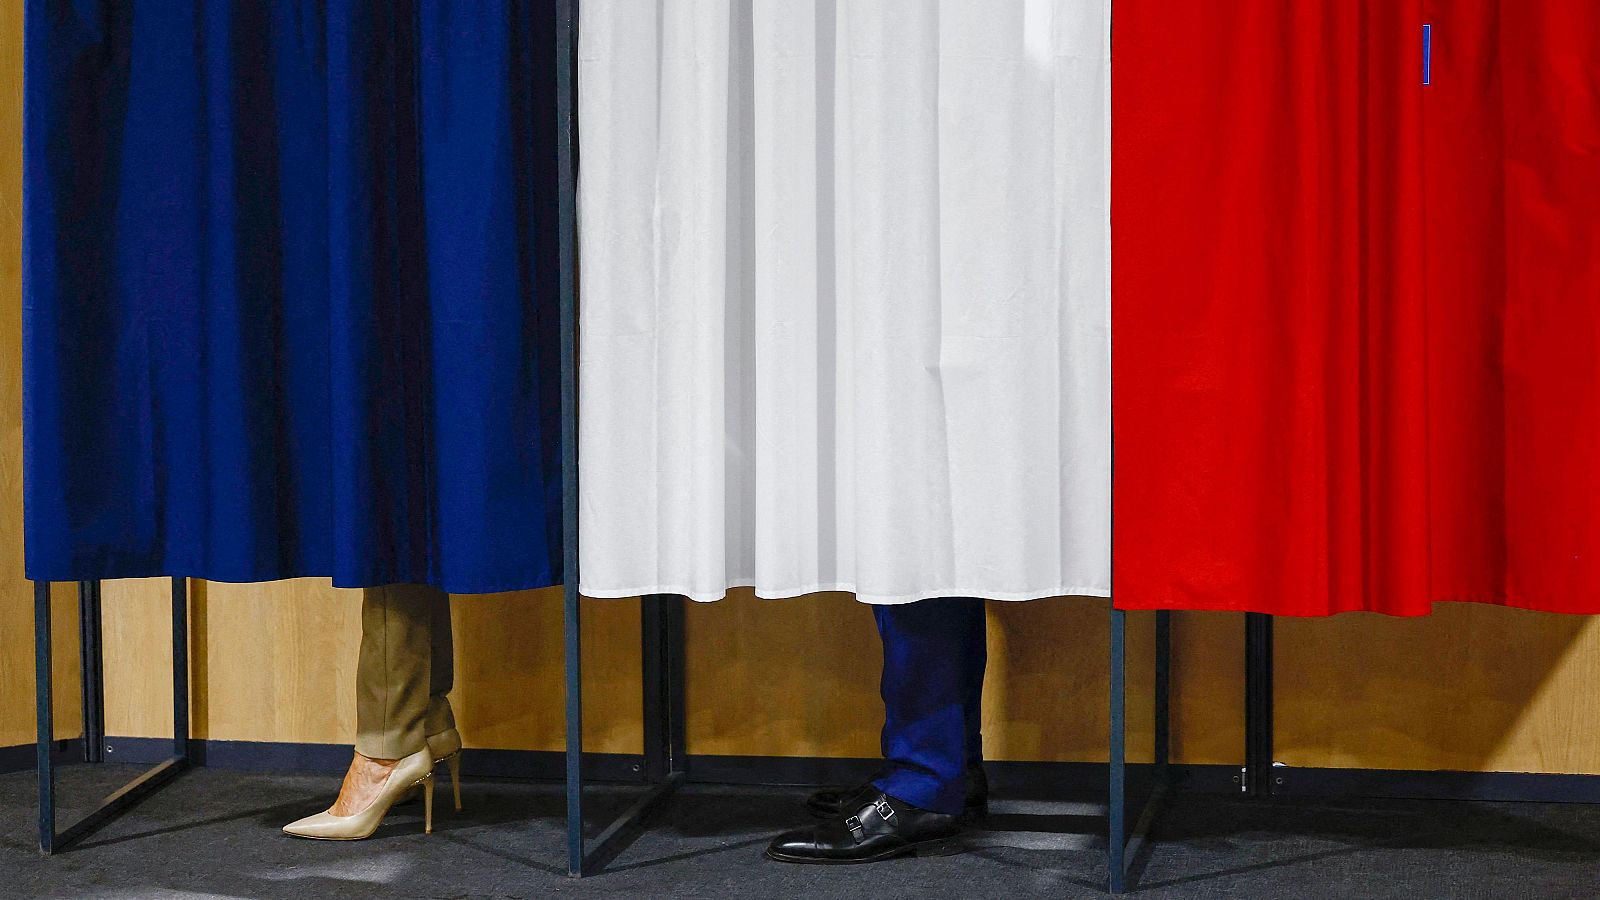 Francia vota unas legislativas la ultraderecha como favorita